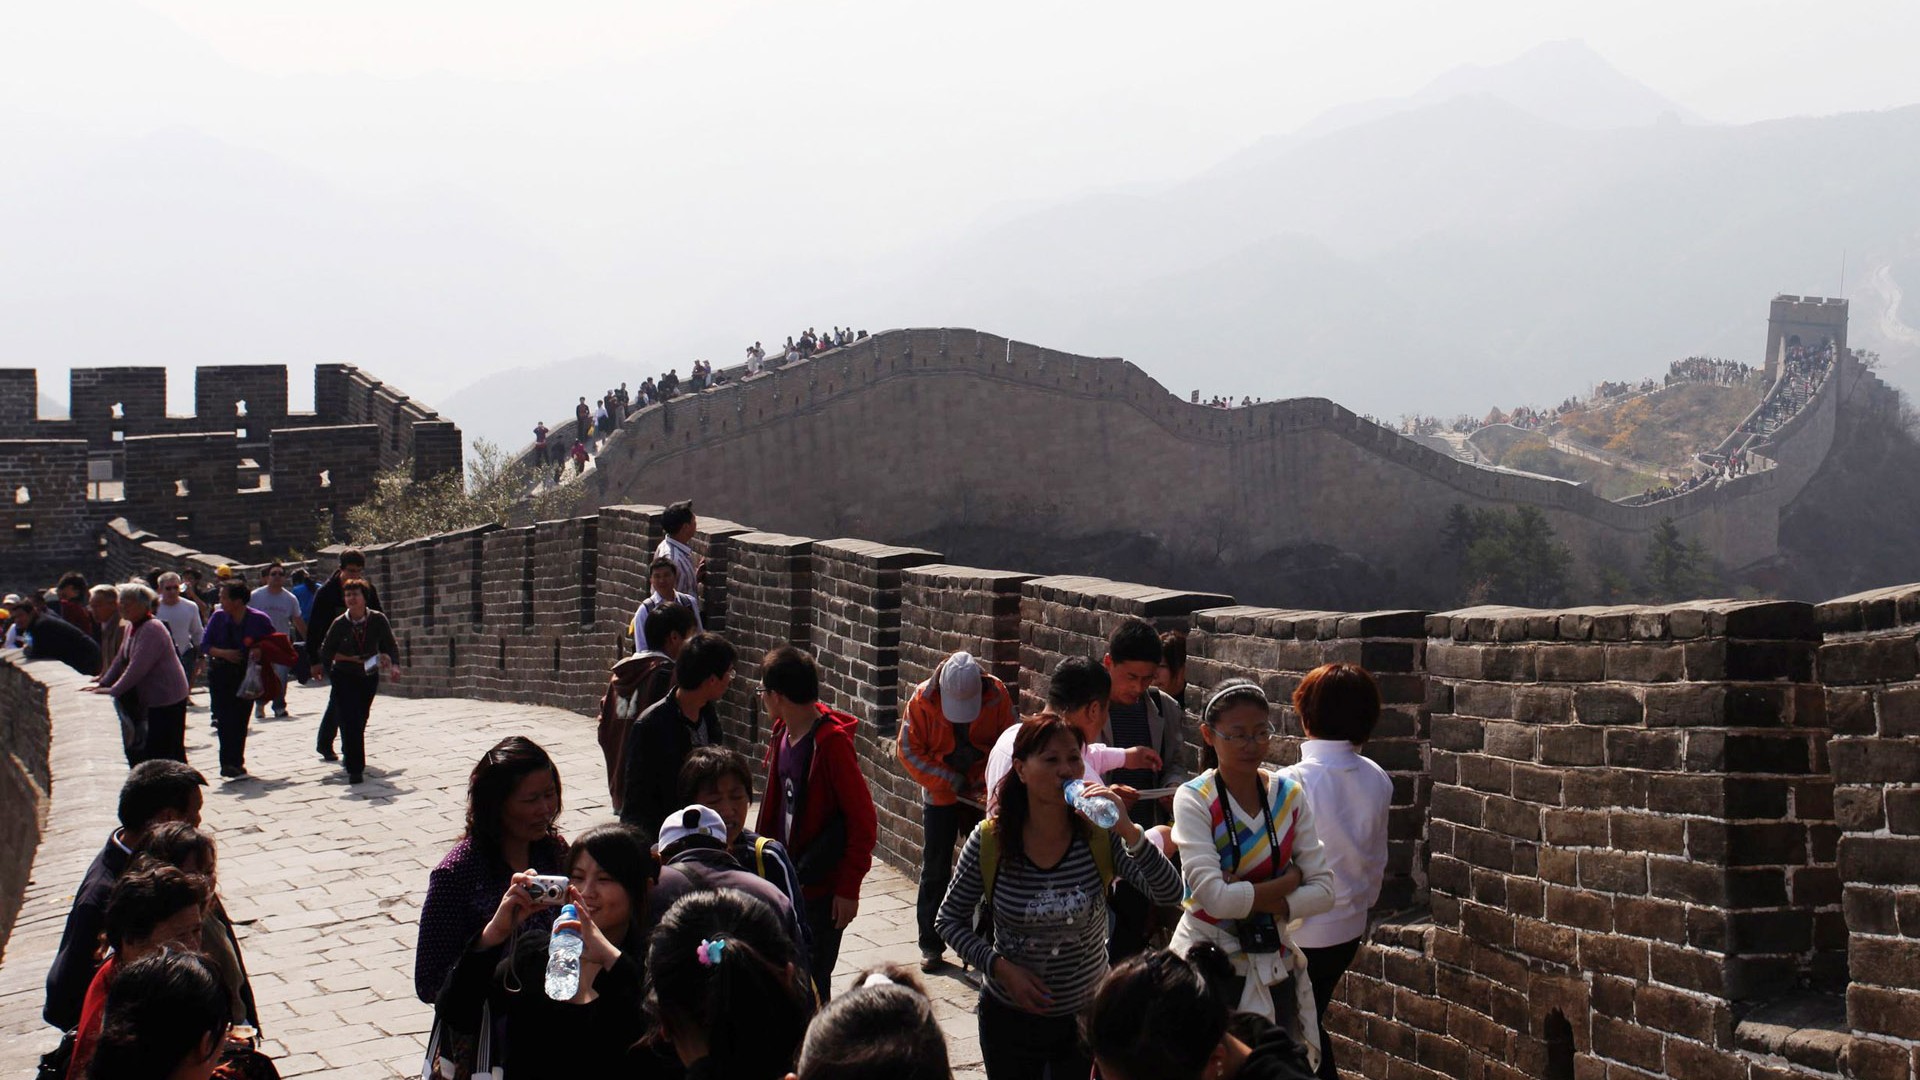 Beijing Tour - Badaling Great Wall (ggc works) #6 - 1920x1080